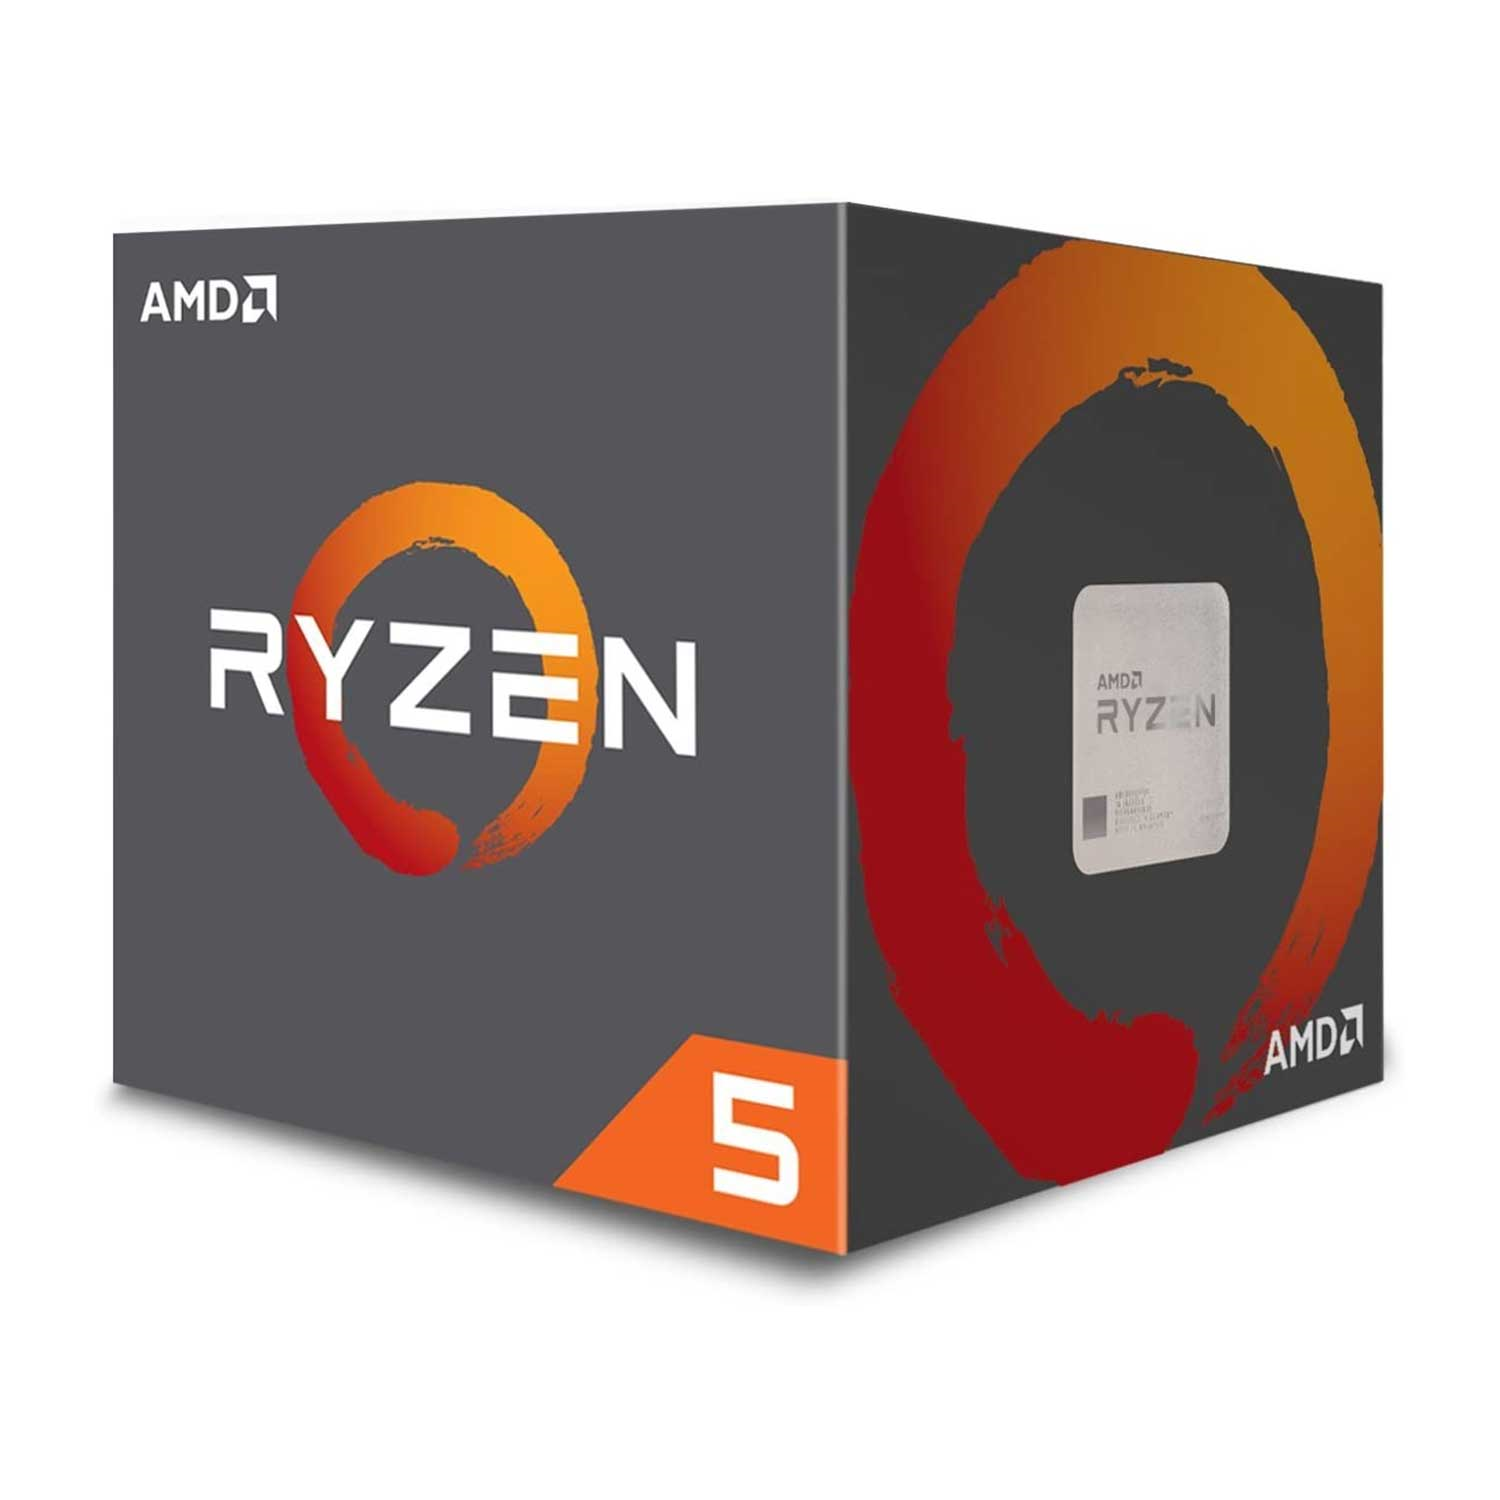 Generic AMD Ryzen 5 2600 Processor with Wraith Stealth Cooler - YD2600BBAFBOX